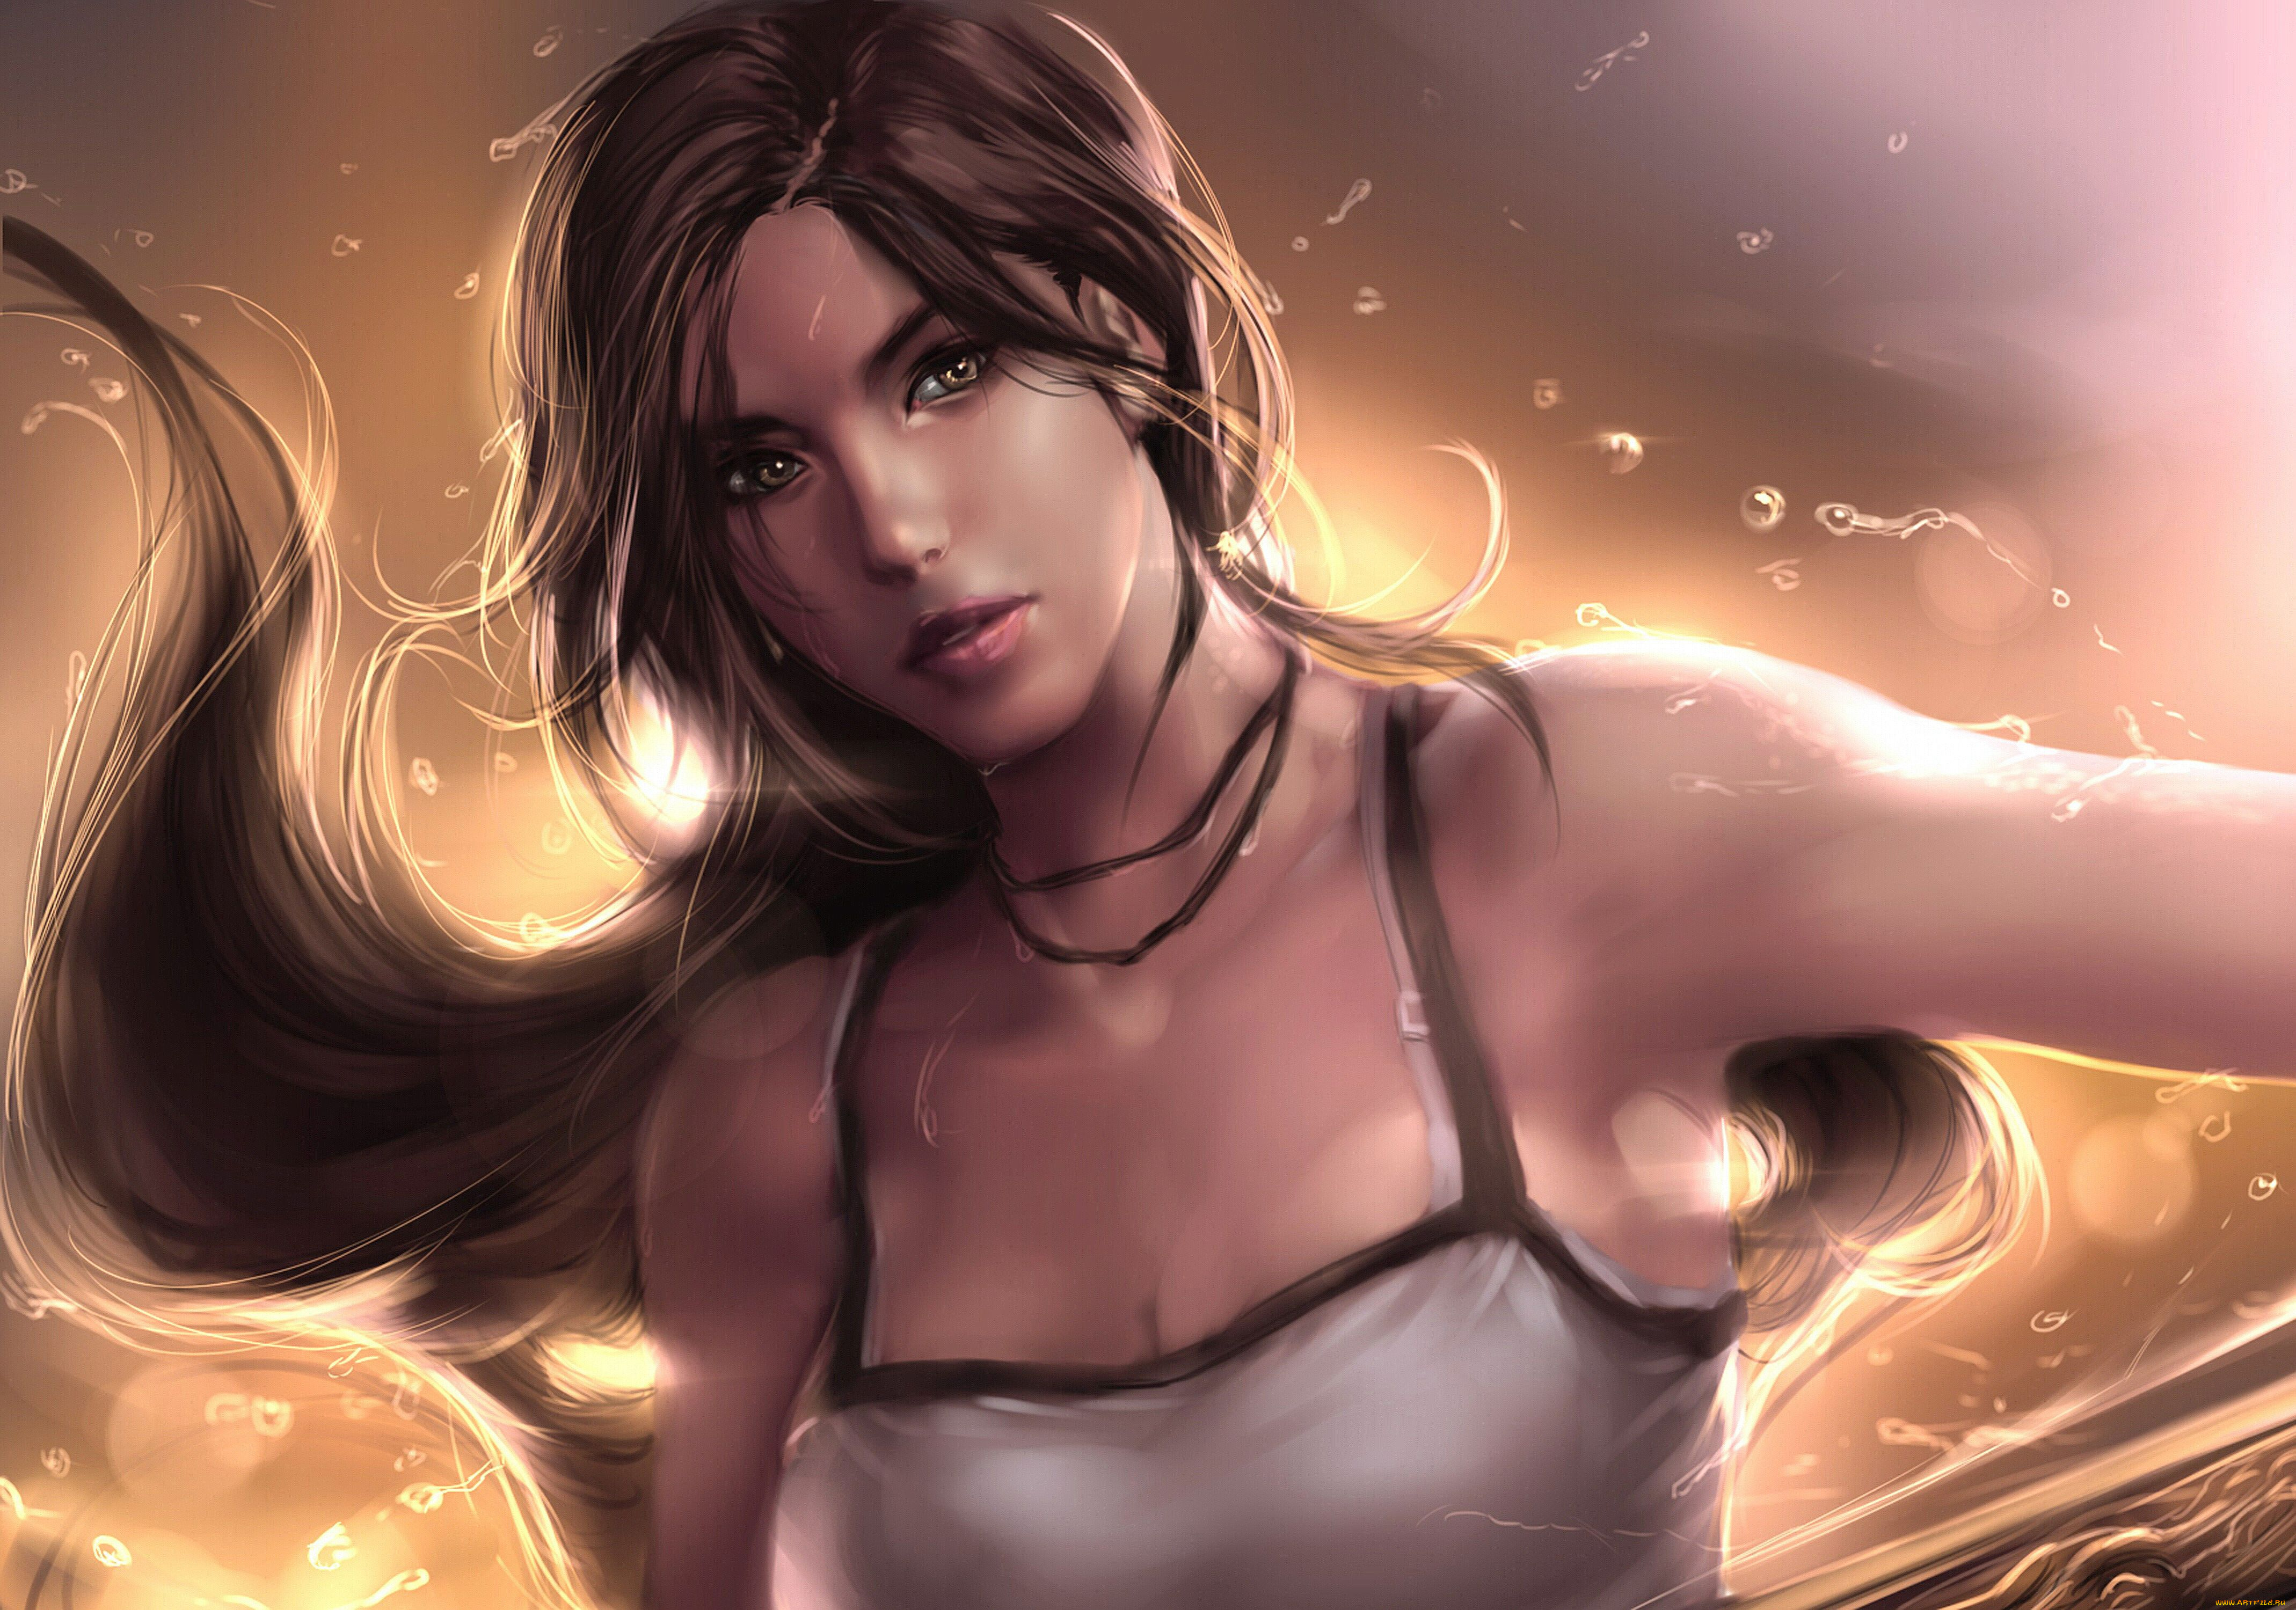 Cg. Лара Крофт аниме арт. Tomb Raider Лара Крофт. Лара Крофт 2013 арт. Лара Крофт арт красивая.